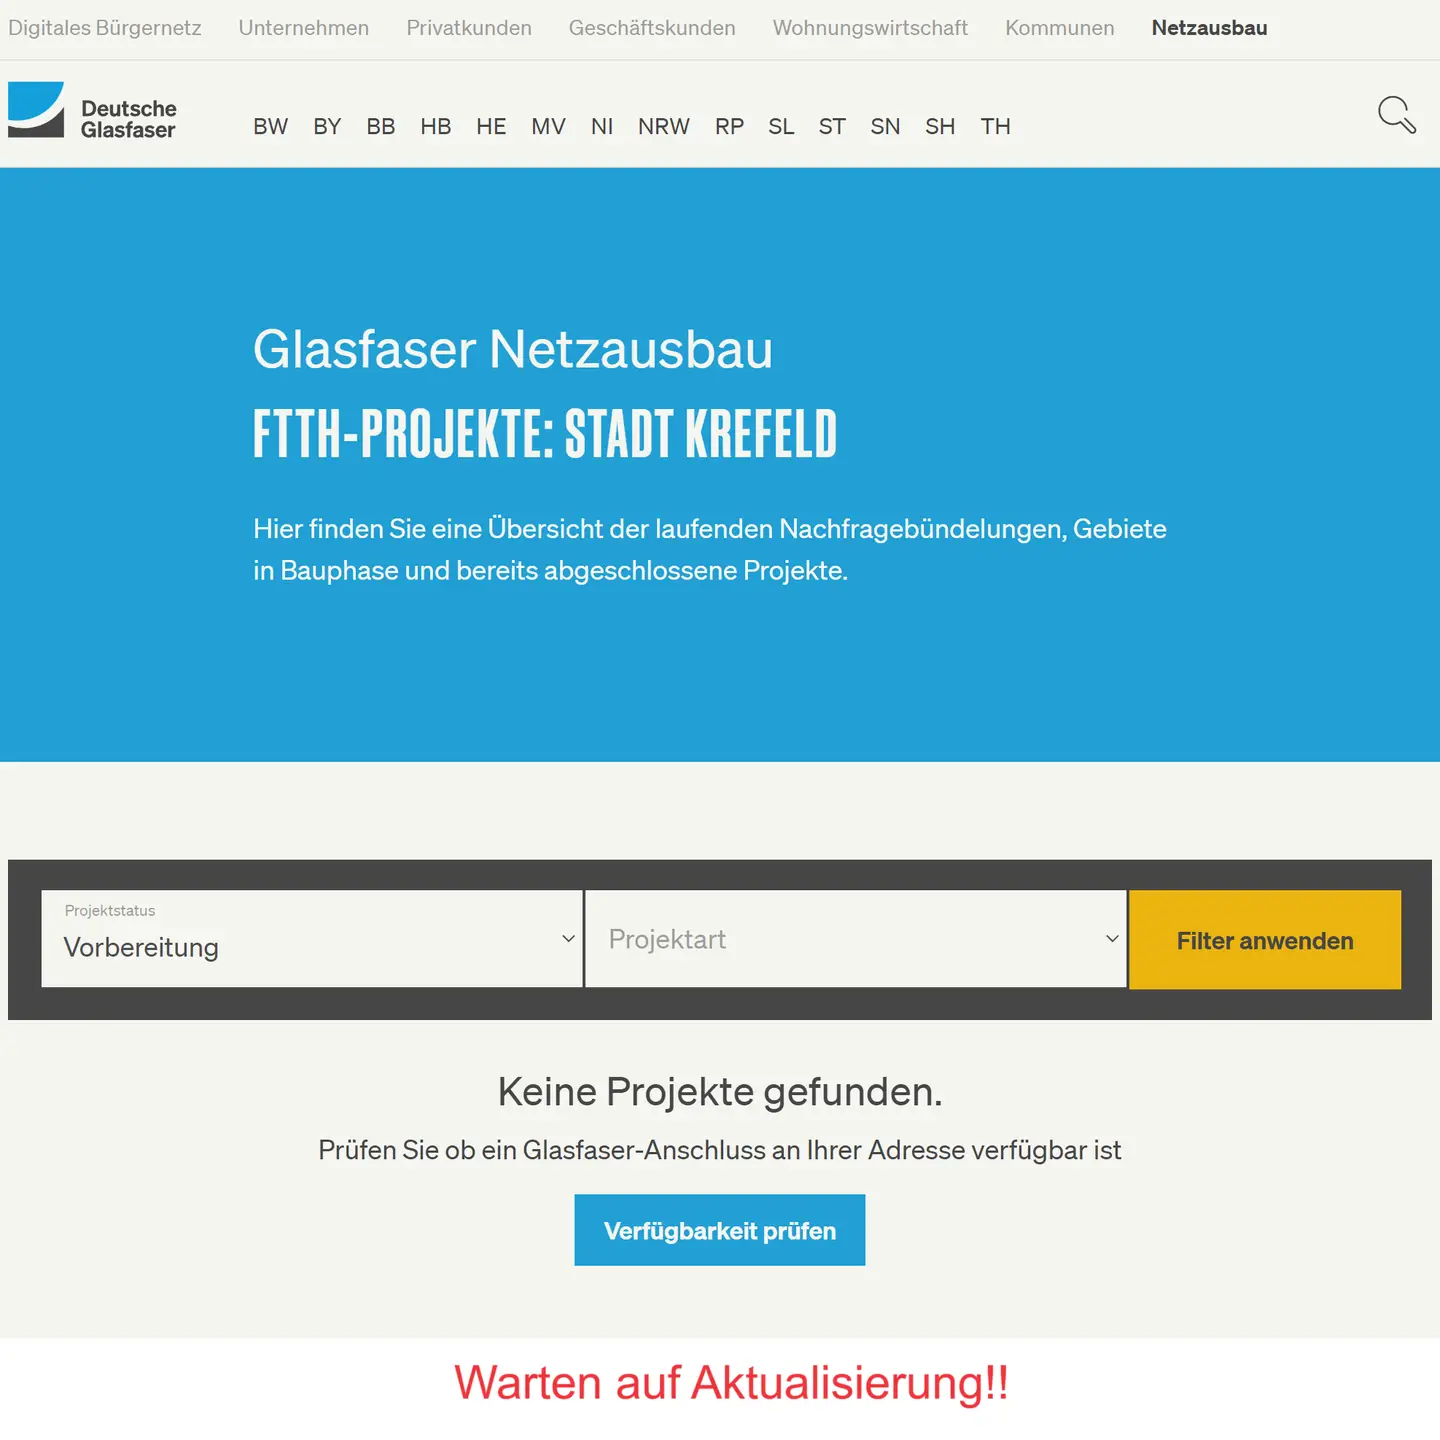 Screenshot der Projektseite Krefeld - Auswahl "In Vorbereitung". Wir warten auf die Aktualisierung